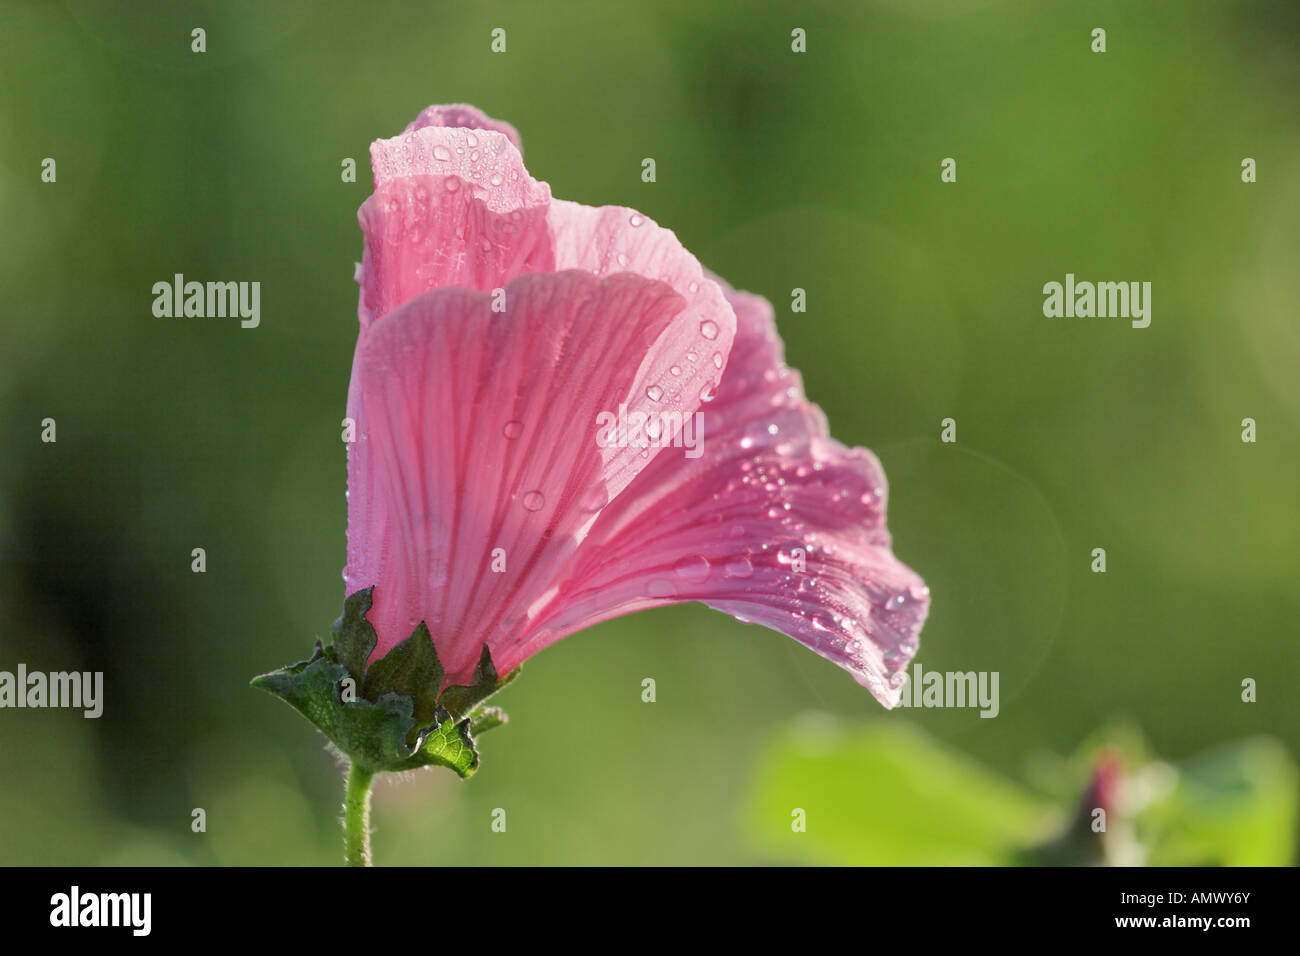 royal mallow (Lavatera trimestris 'Silver Cup', Lavatera trimestris Silver Cup), single blossom Stock Photo